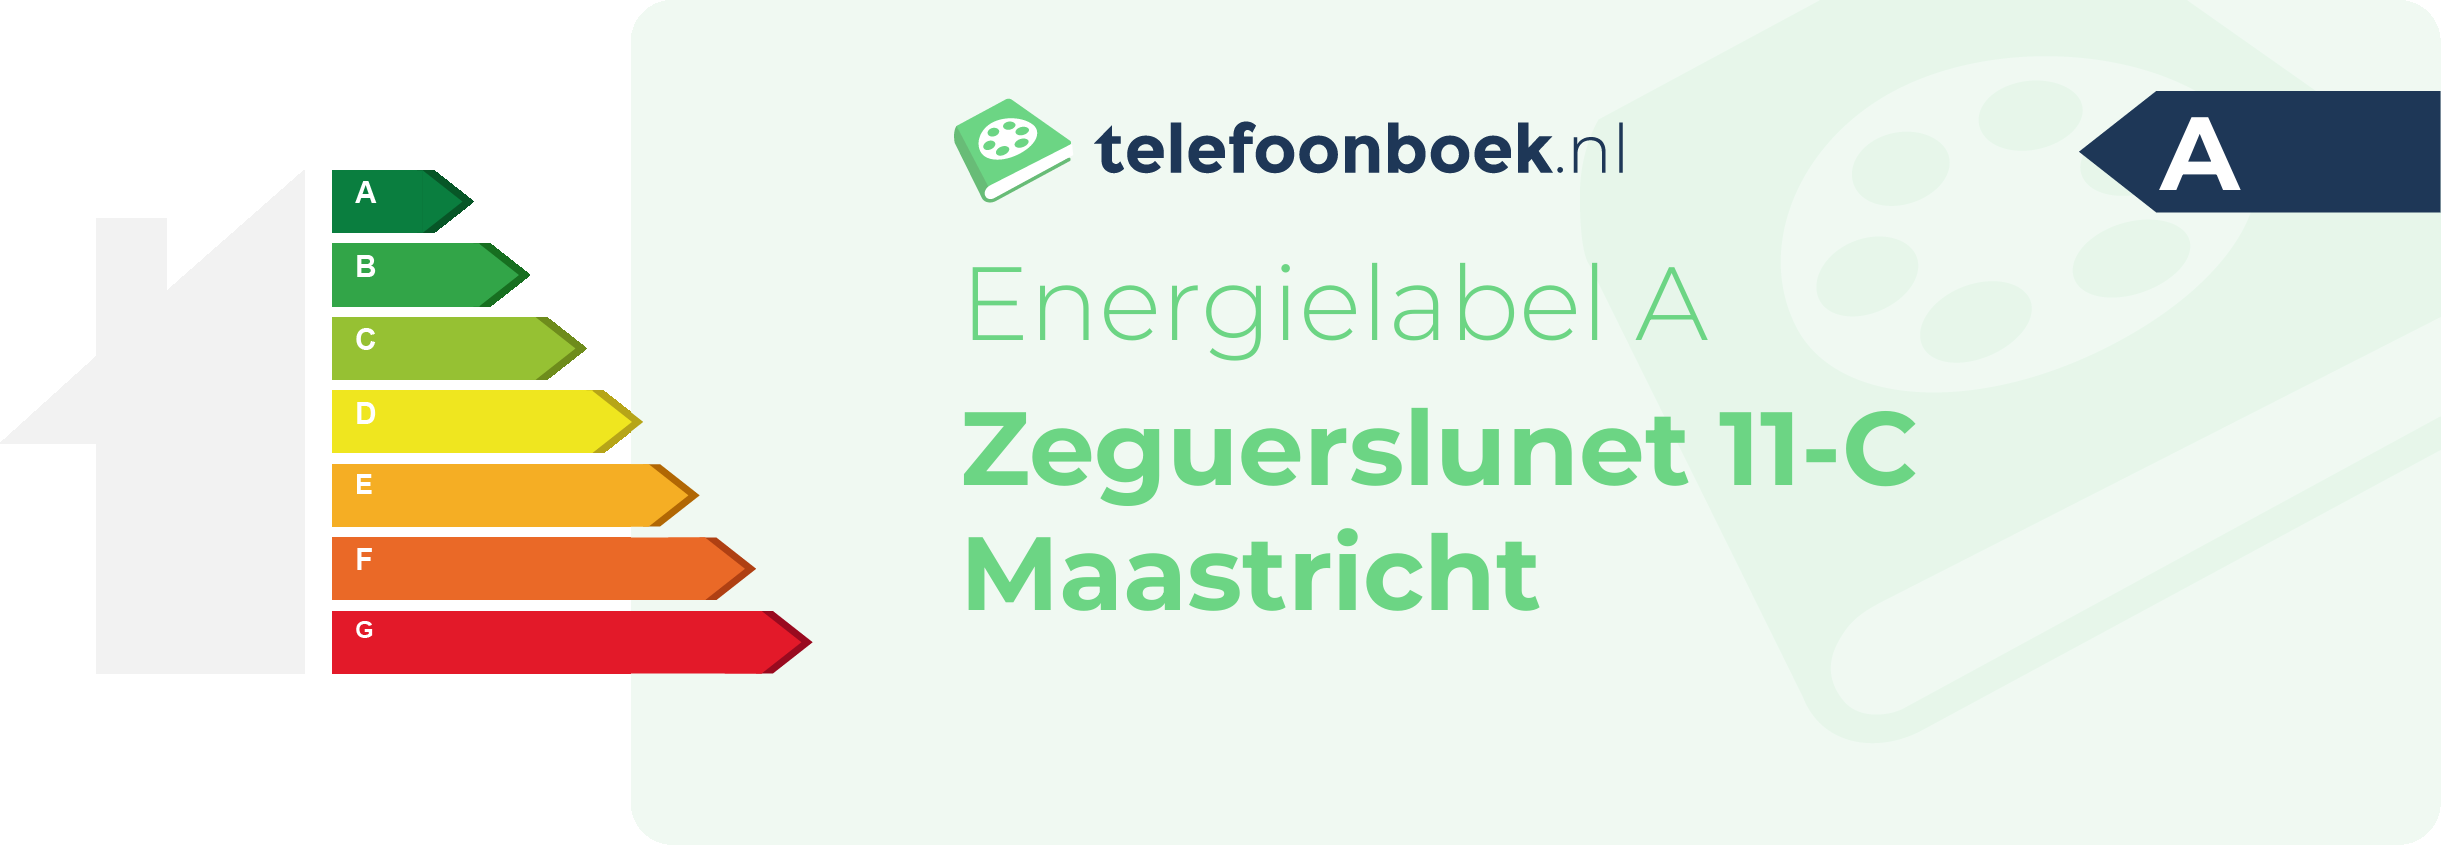 Energielabel Zeguerslunet 11-C Maastricht